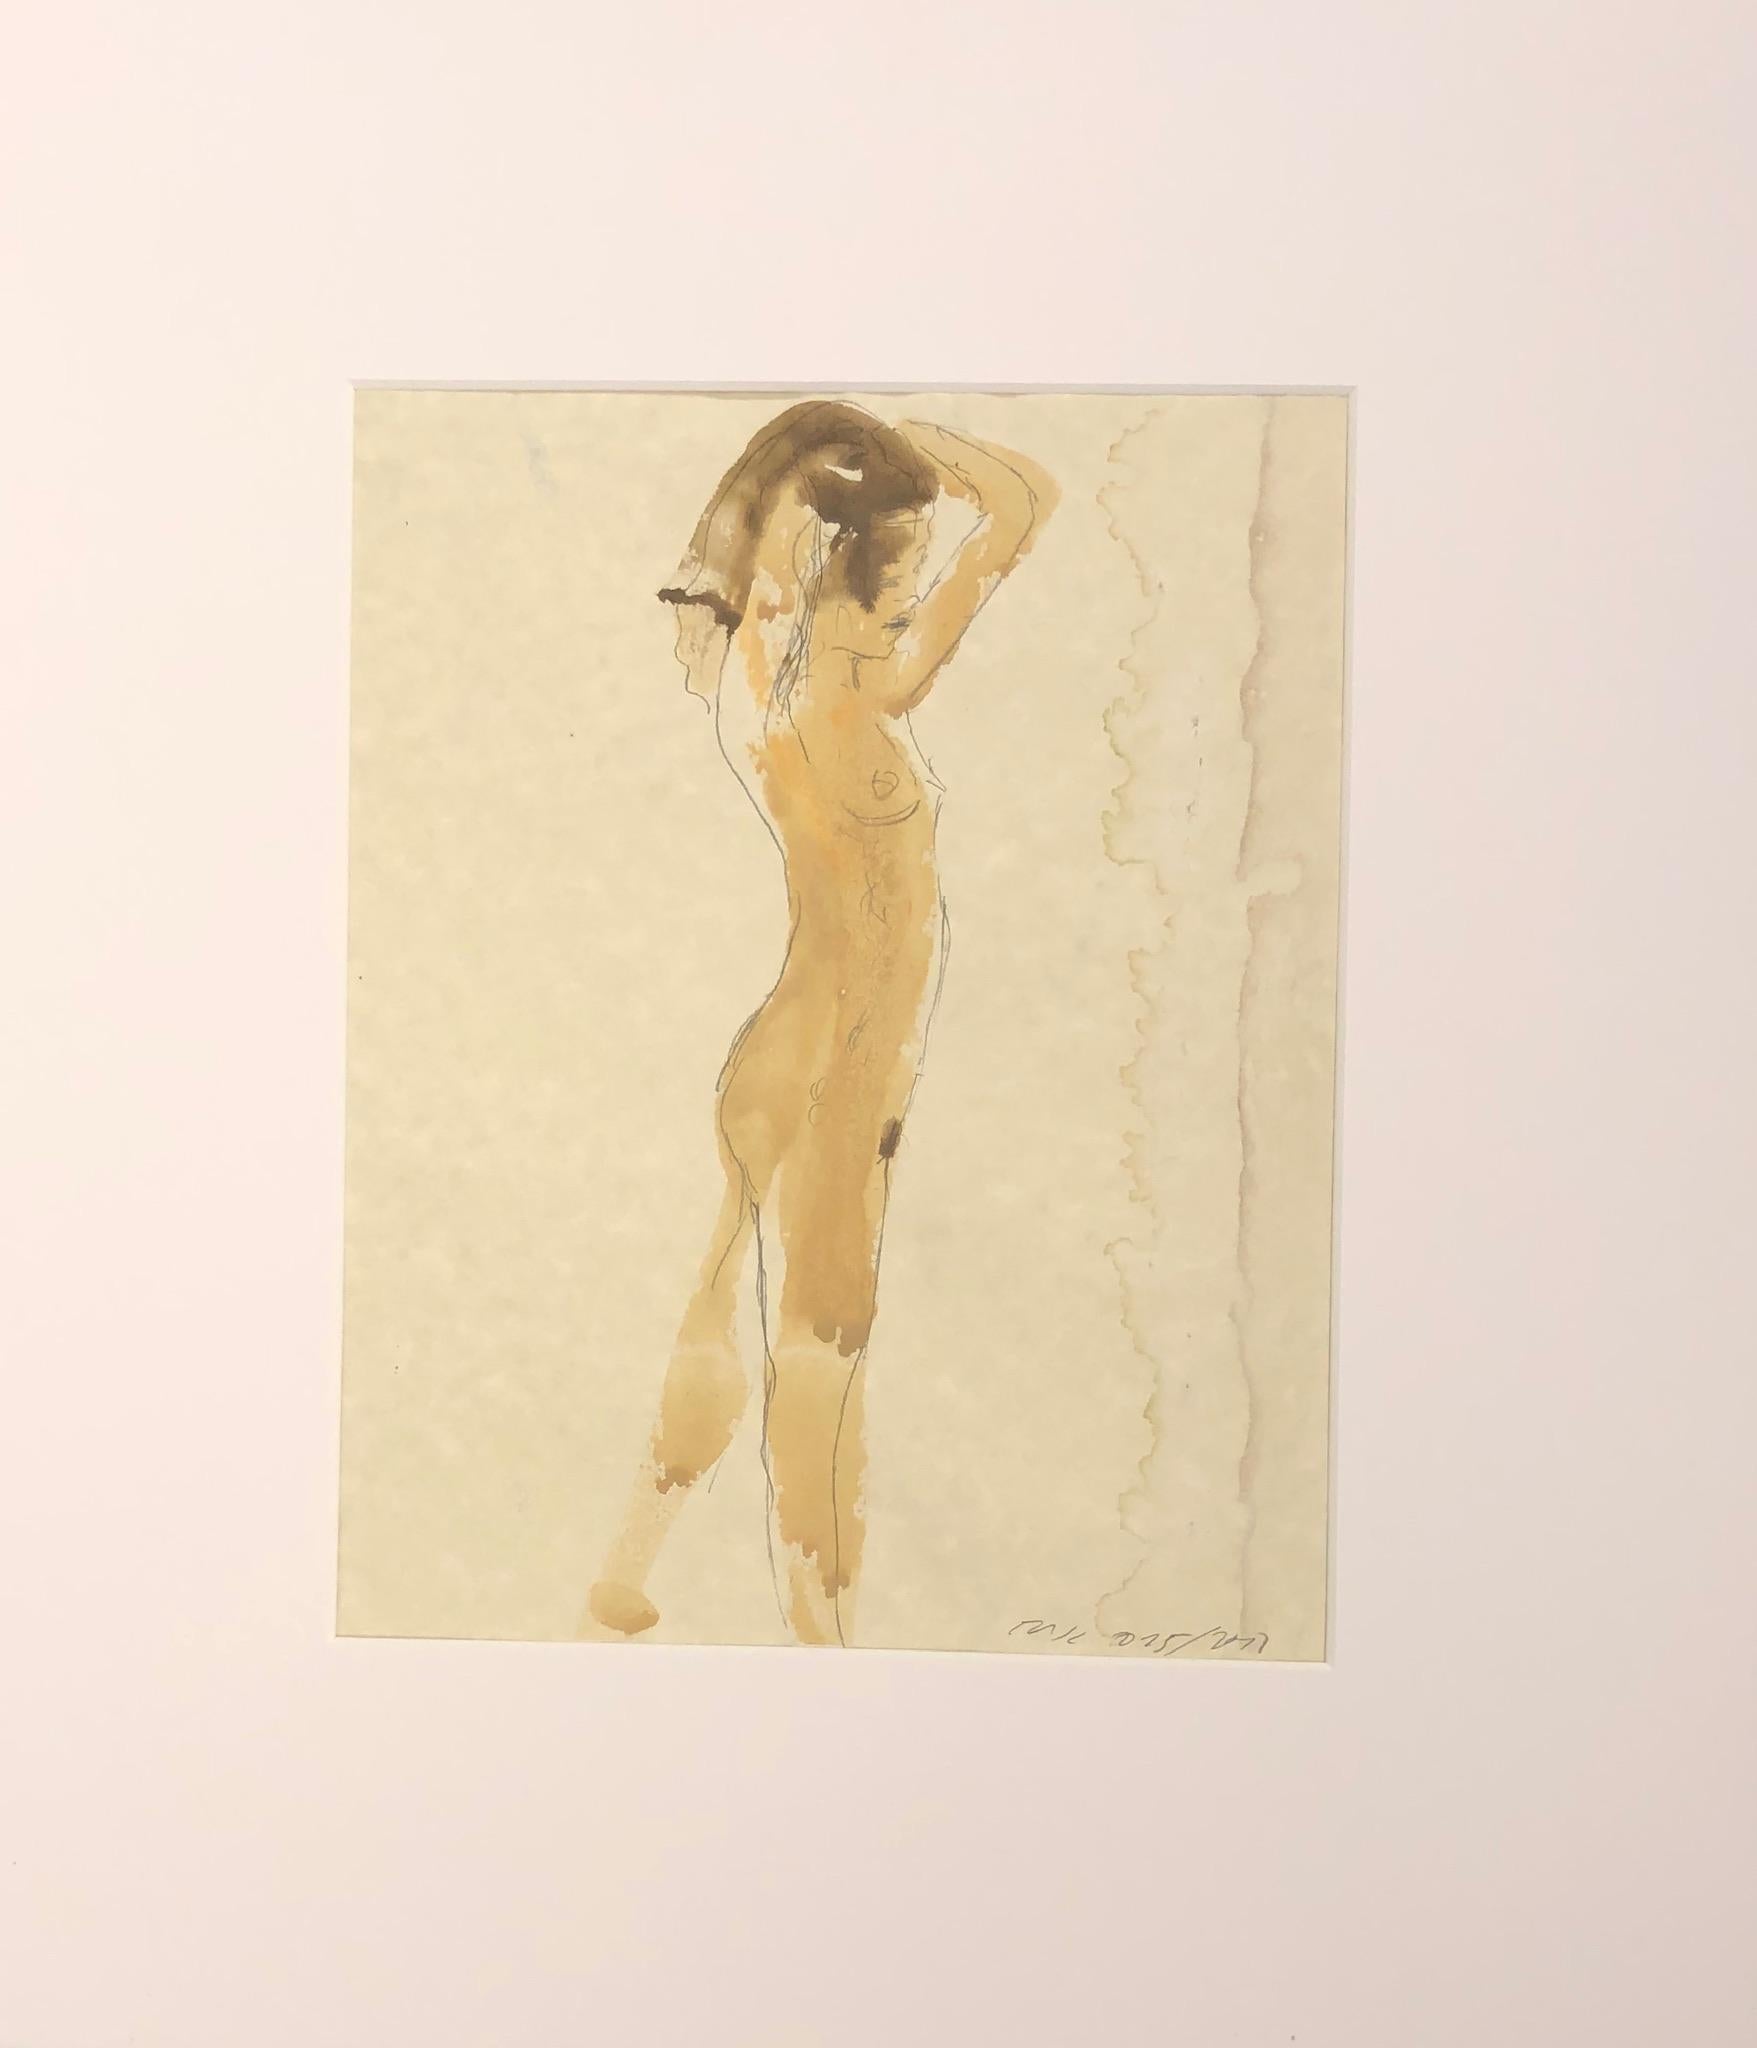 Nu féminin debout, aquarelle et graphite sur papier dans des tons terreux sourds - Art de Eduardo Alvarado